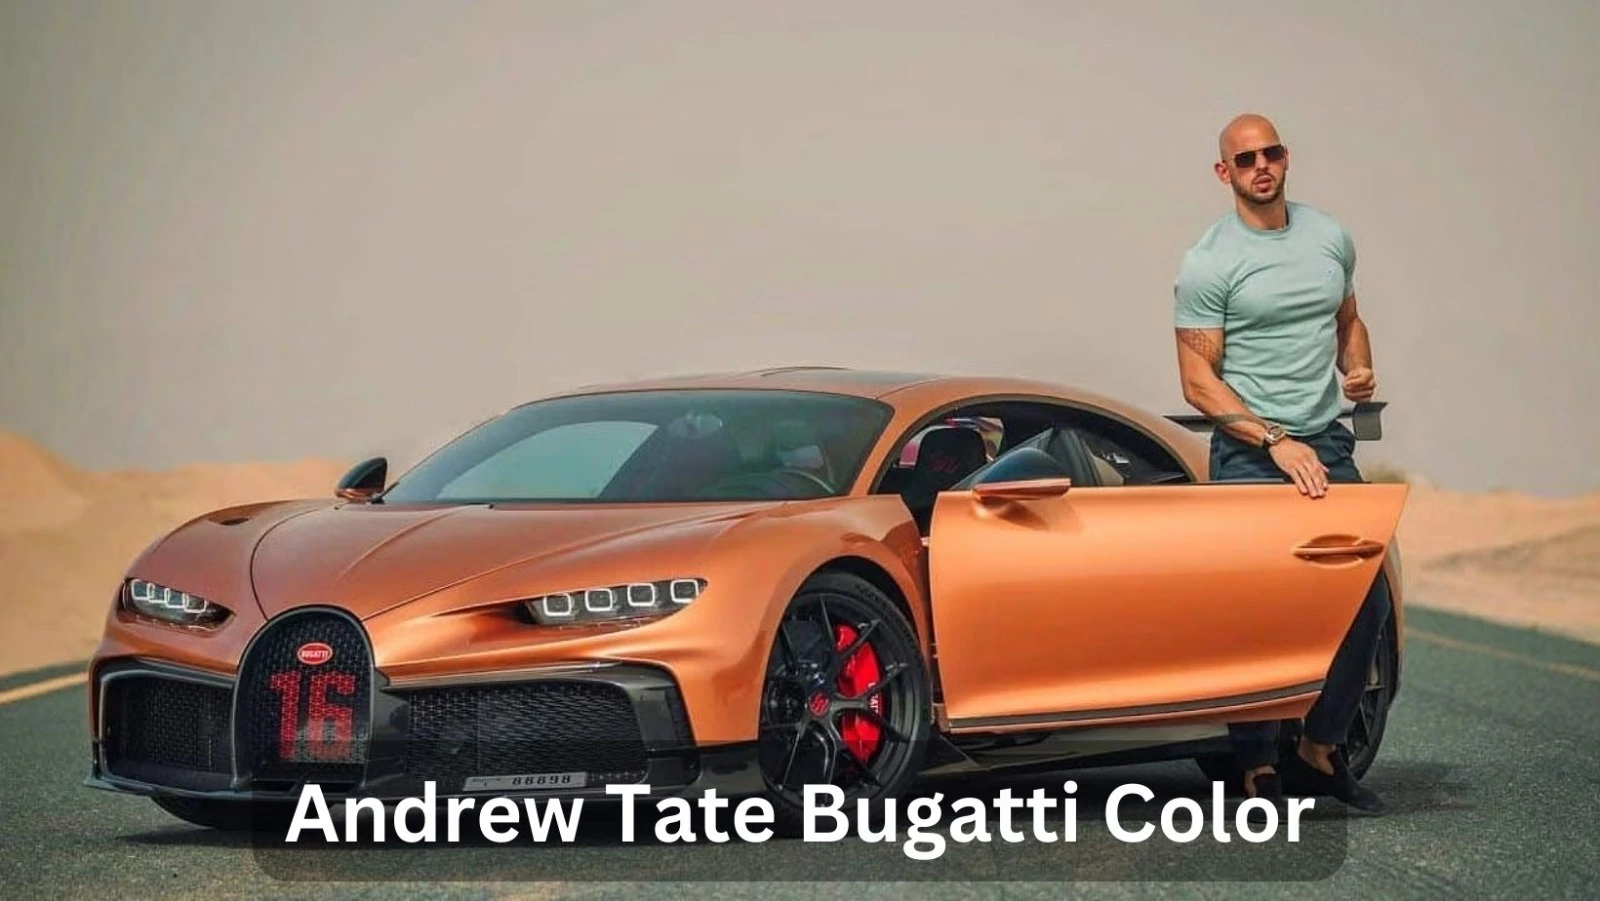 Andrew Tate Bugatti Color, Price, And More